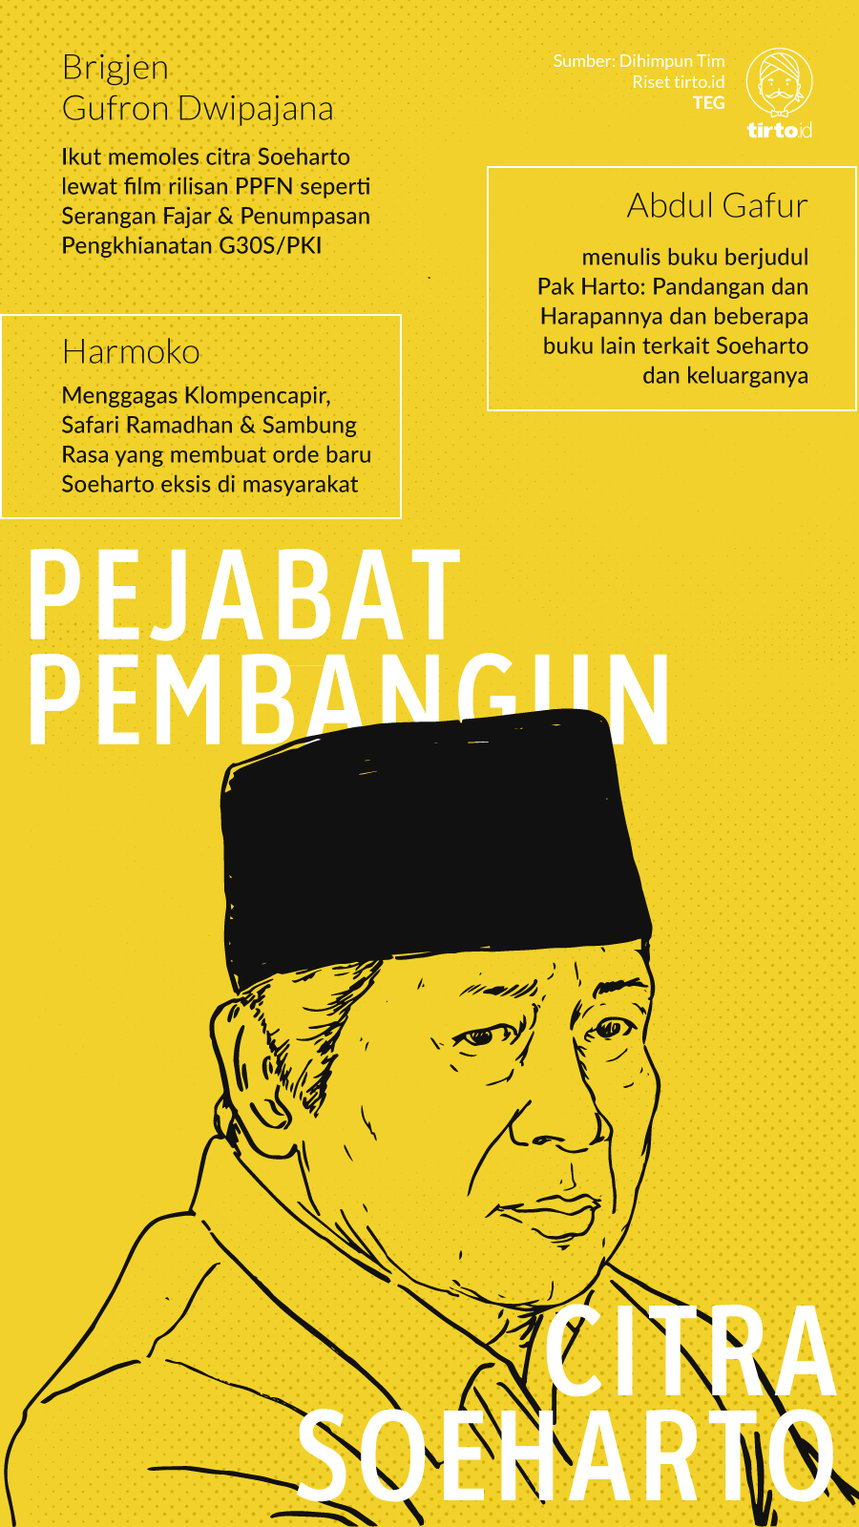 Infografik Pejabat Pembangun Citra Soeharto